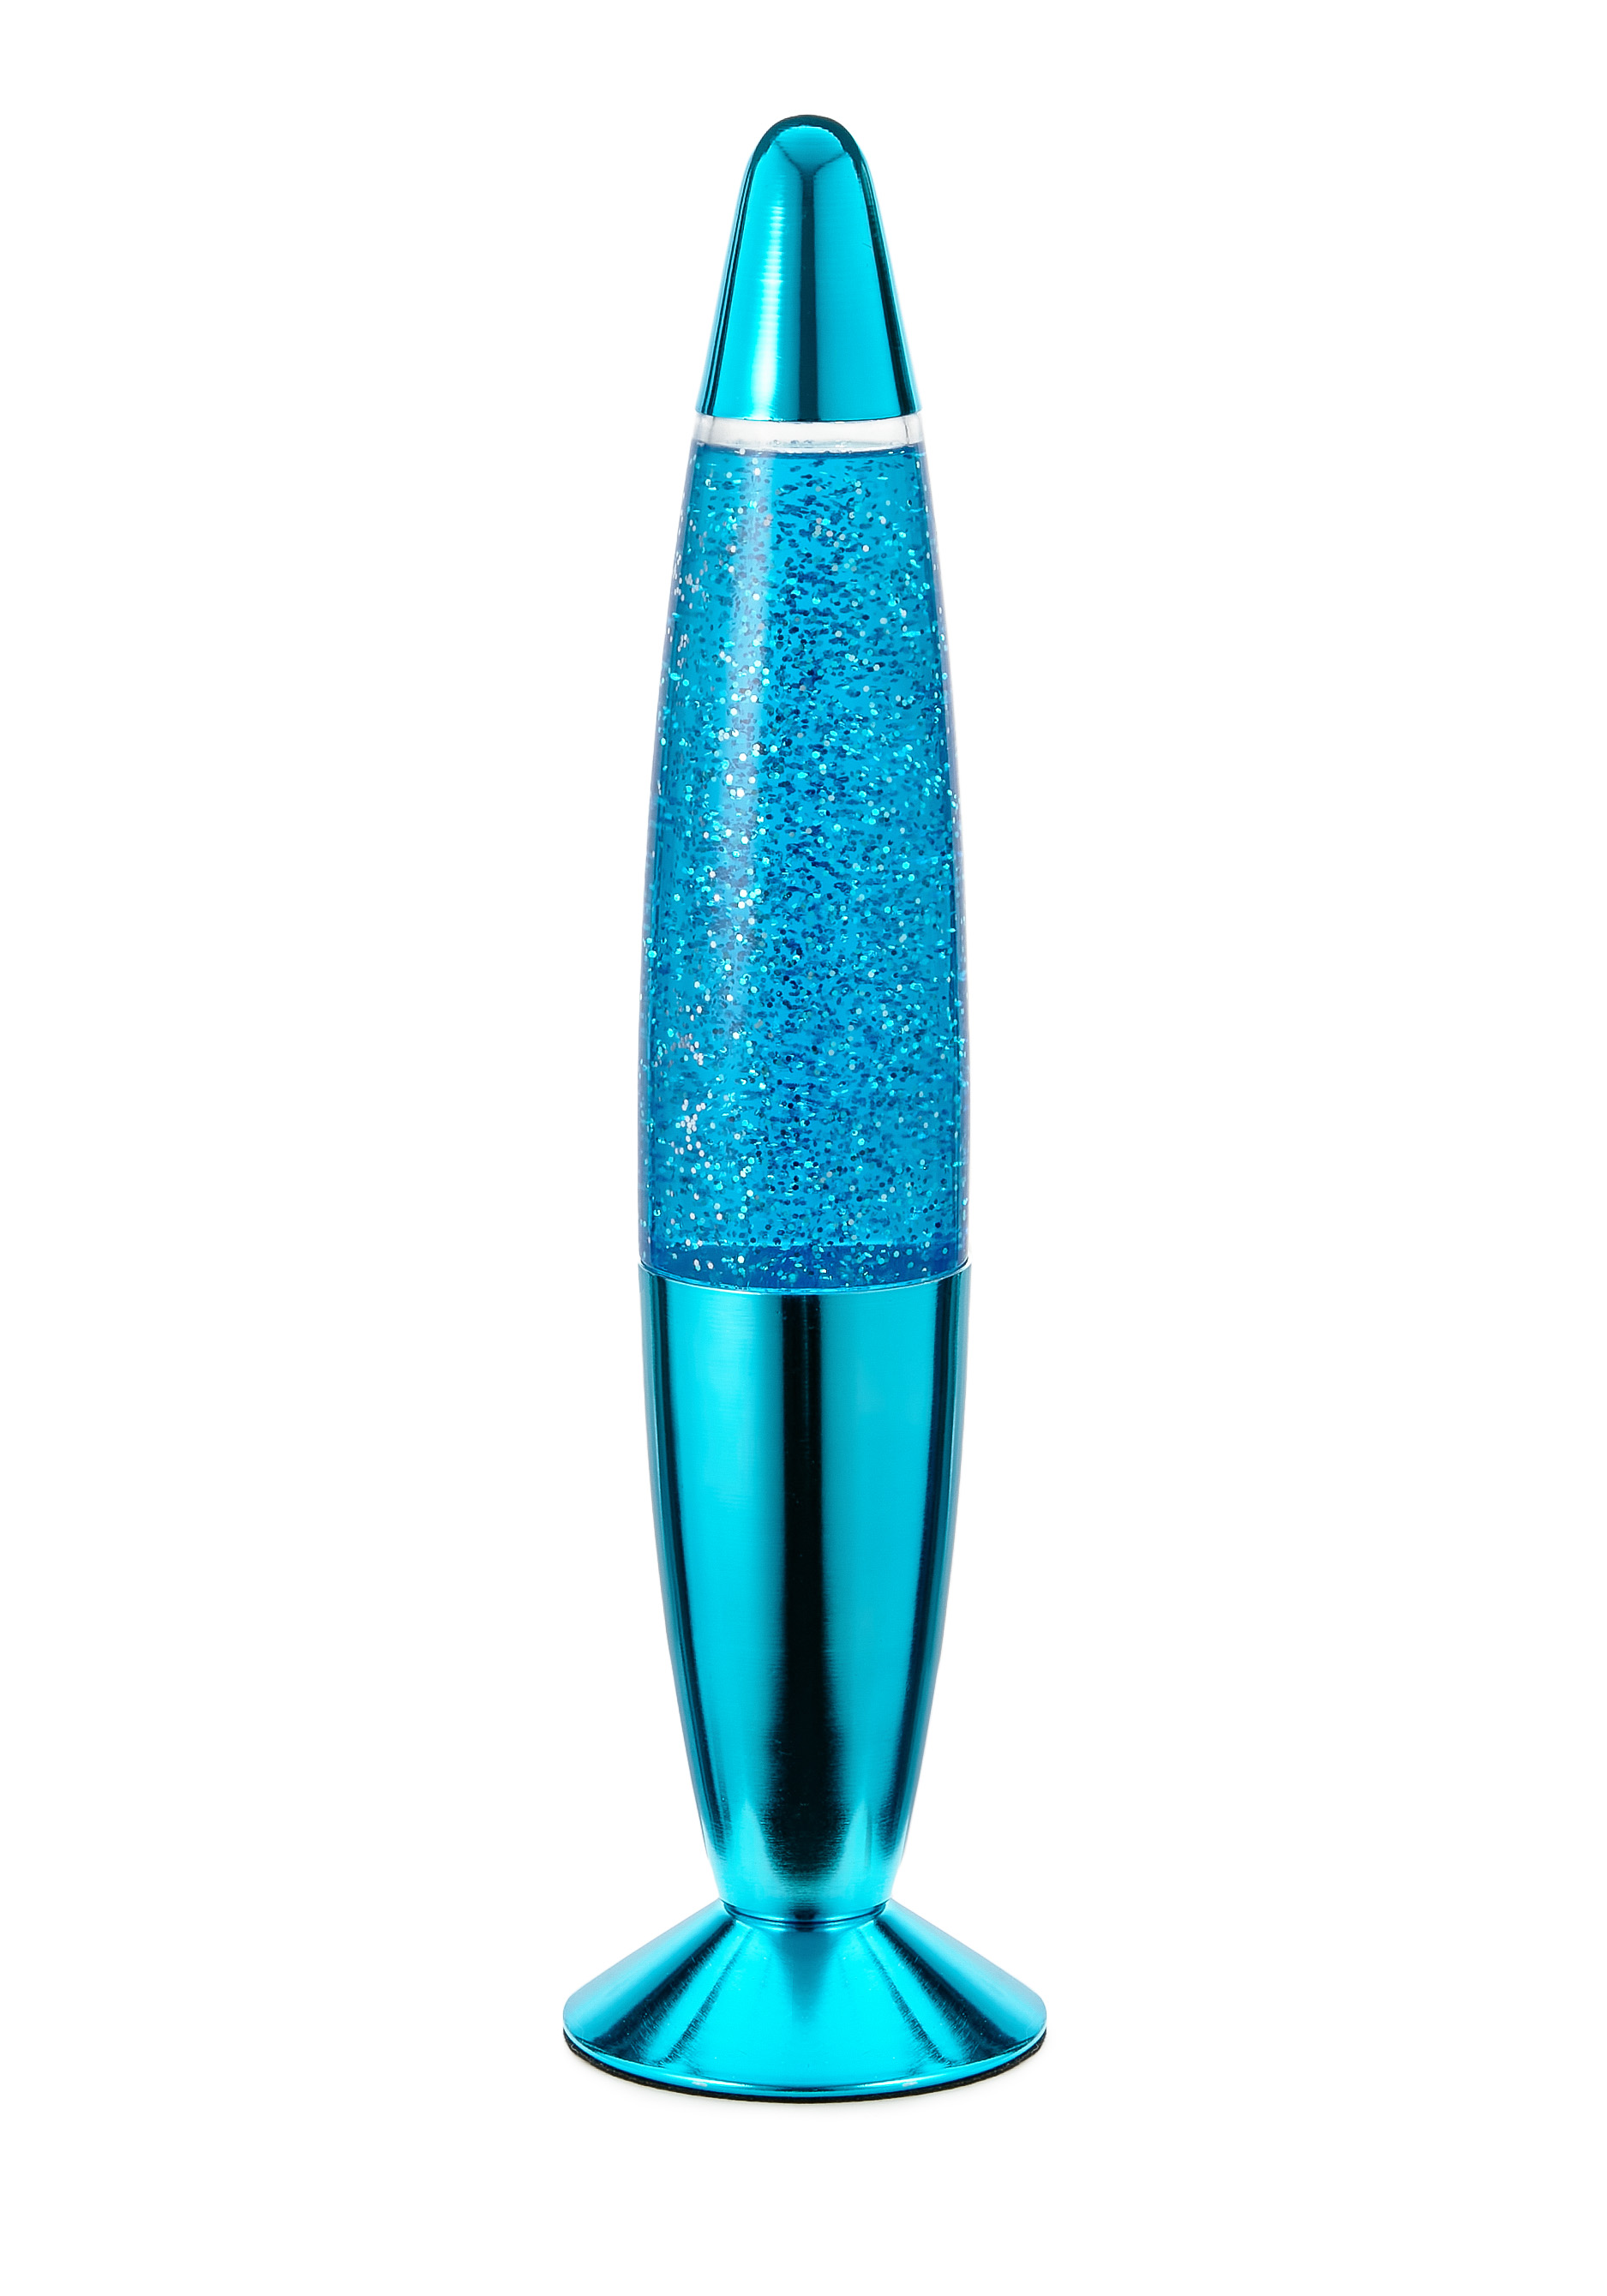 Светильник-глиттер Старт, цвет синий, размер 36*9